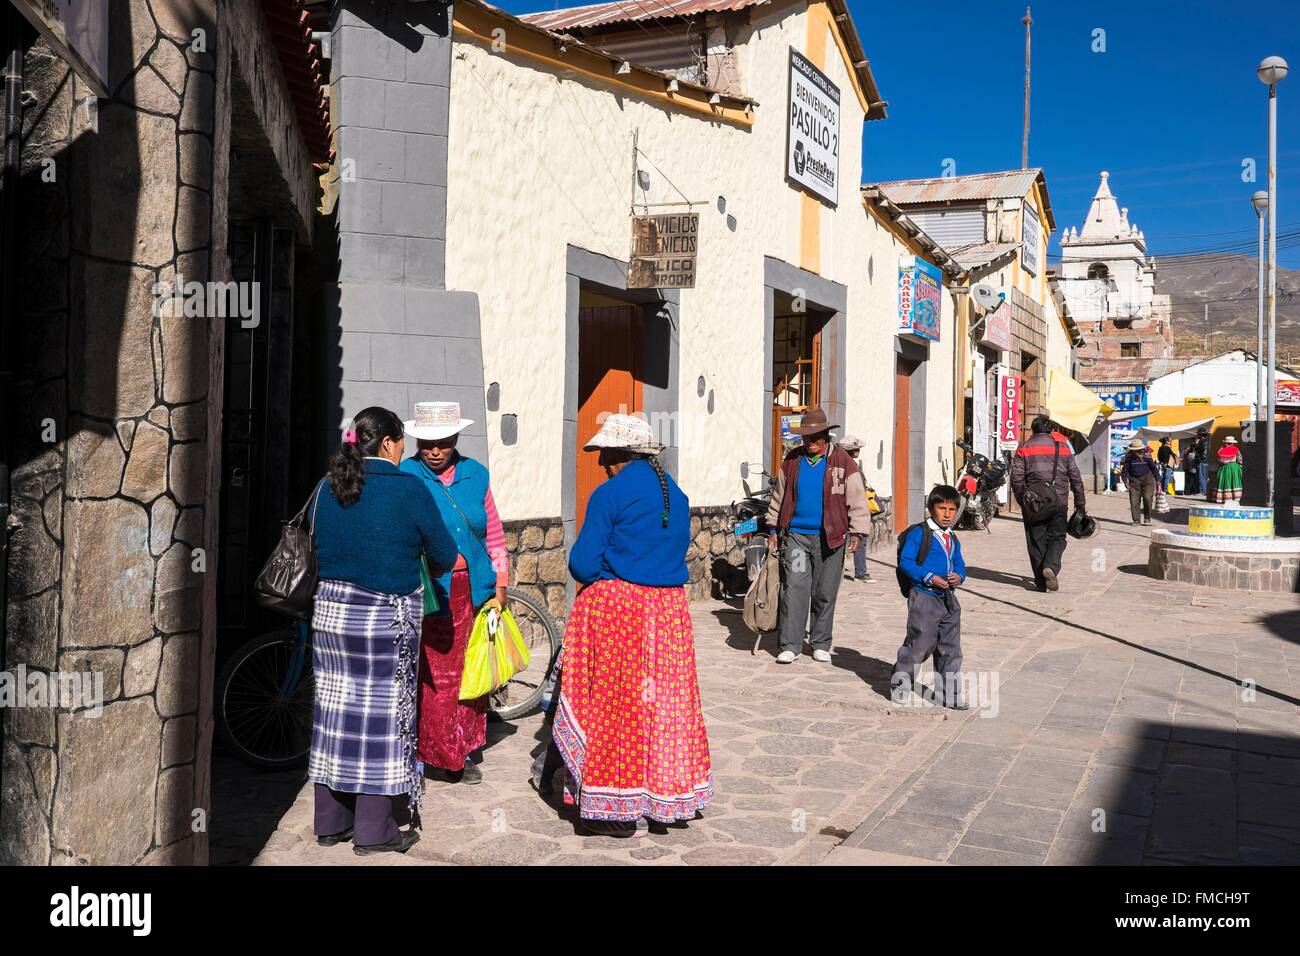 Il Perù, Provincia di Arequipa, Colca Valley, Chivay village (alt : 3640m) Foto Stock